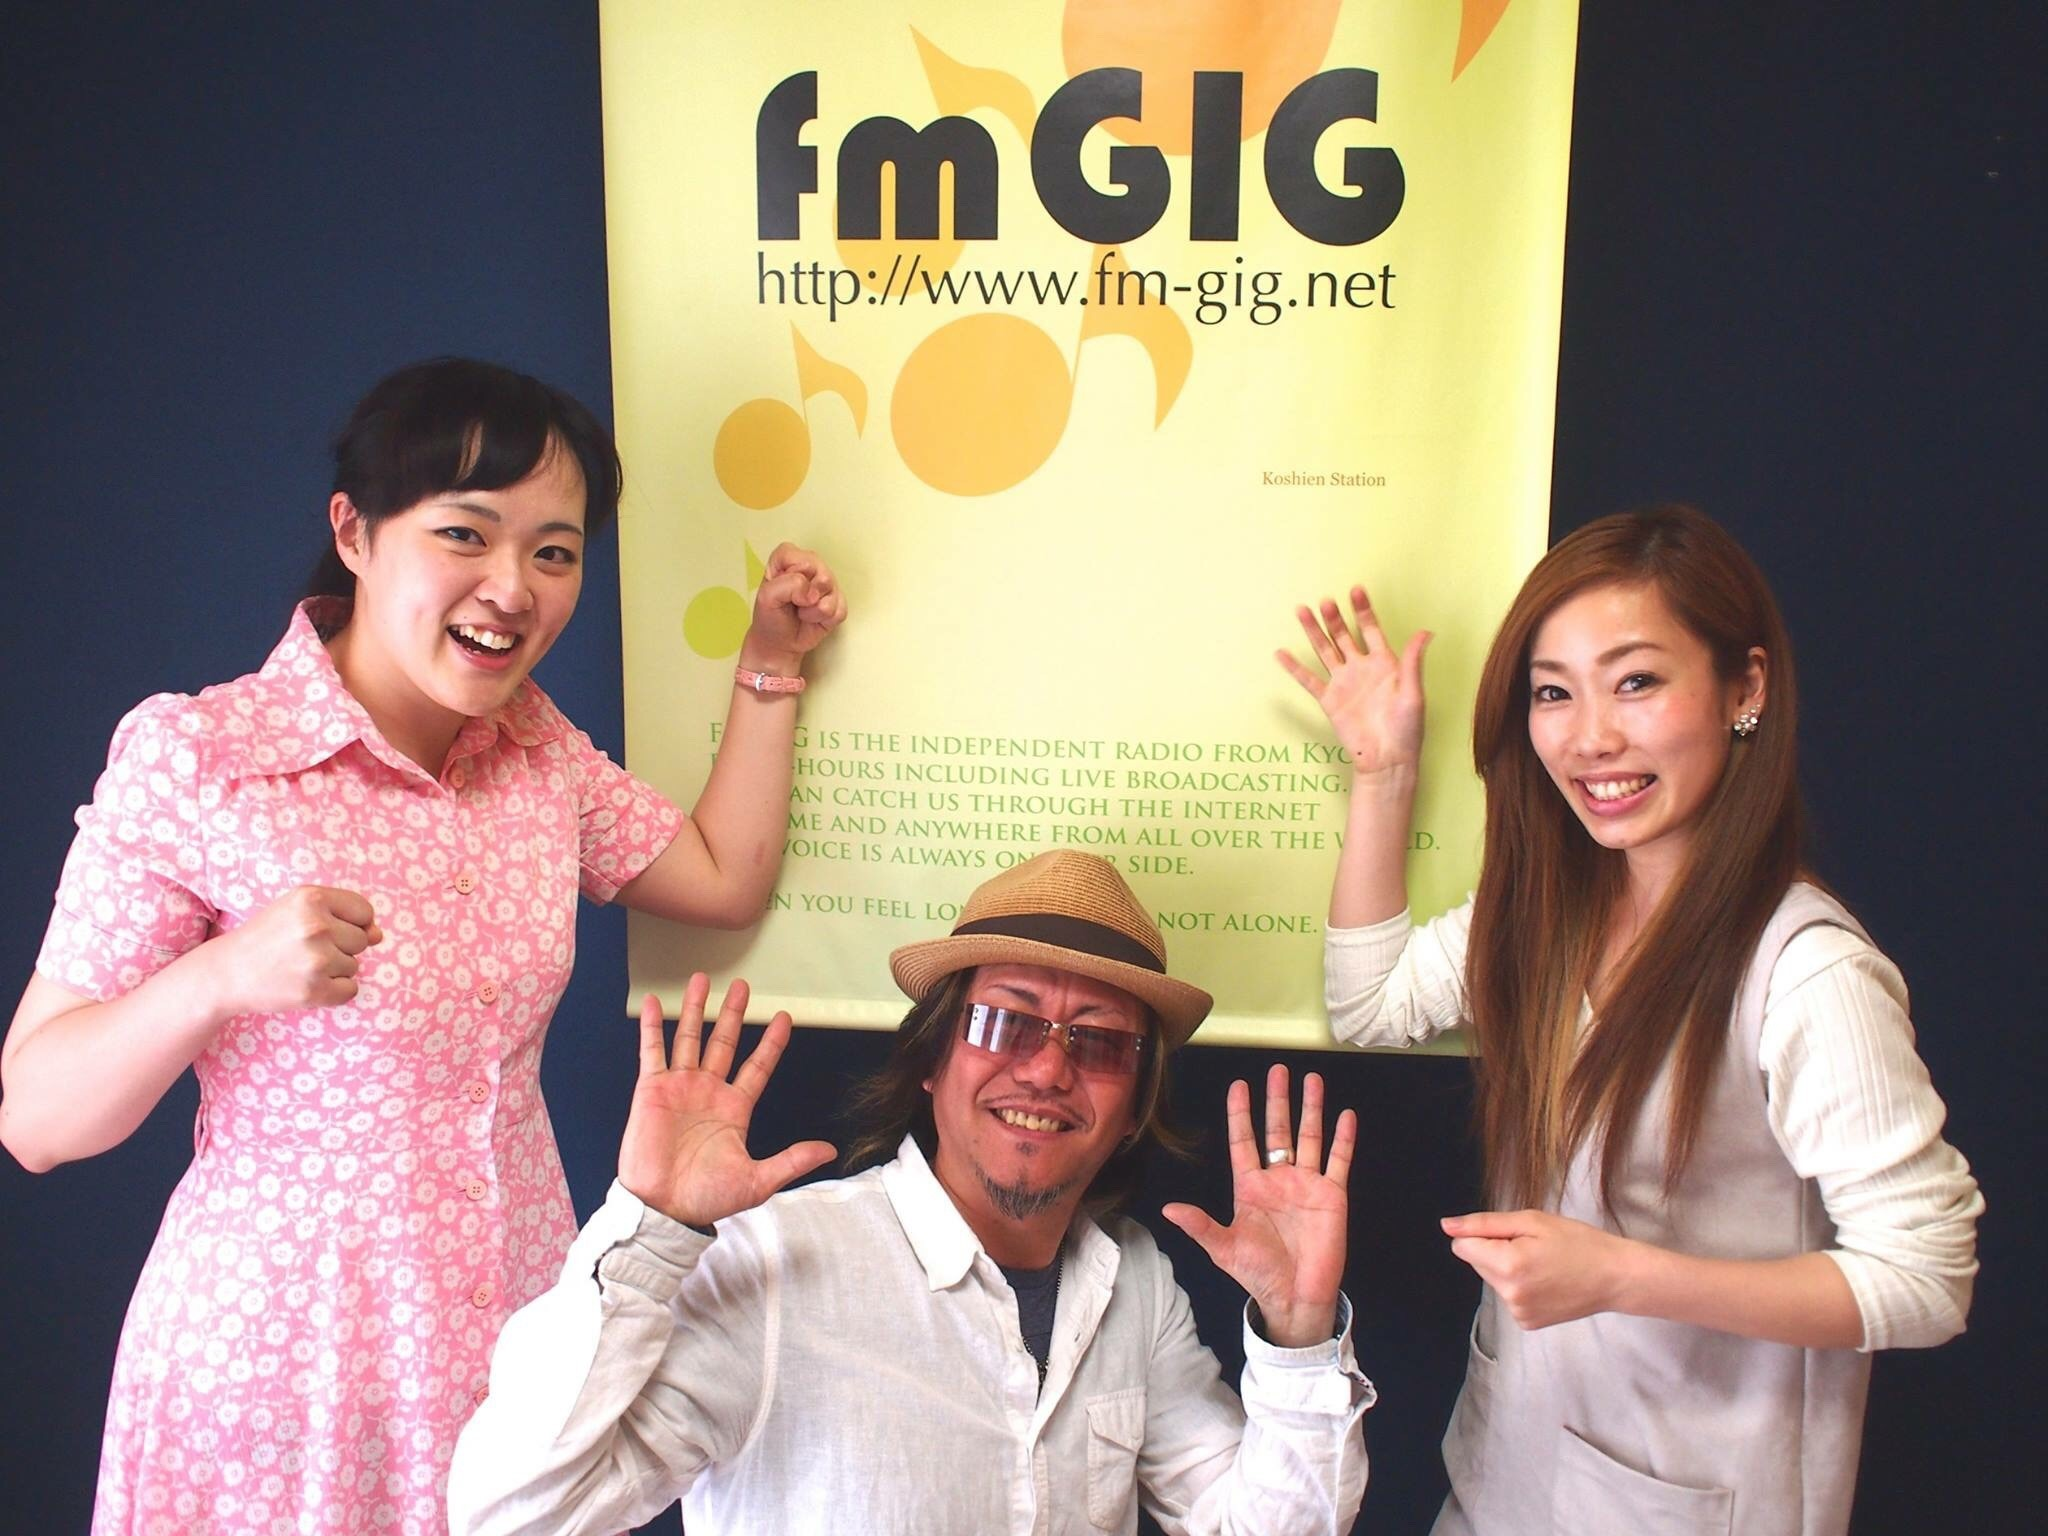 【2名出演】FM GIG とおるのLOVE&PEACE